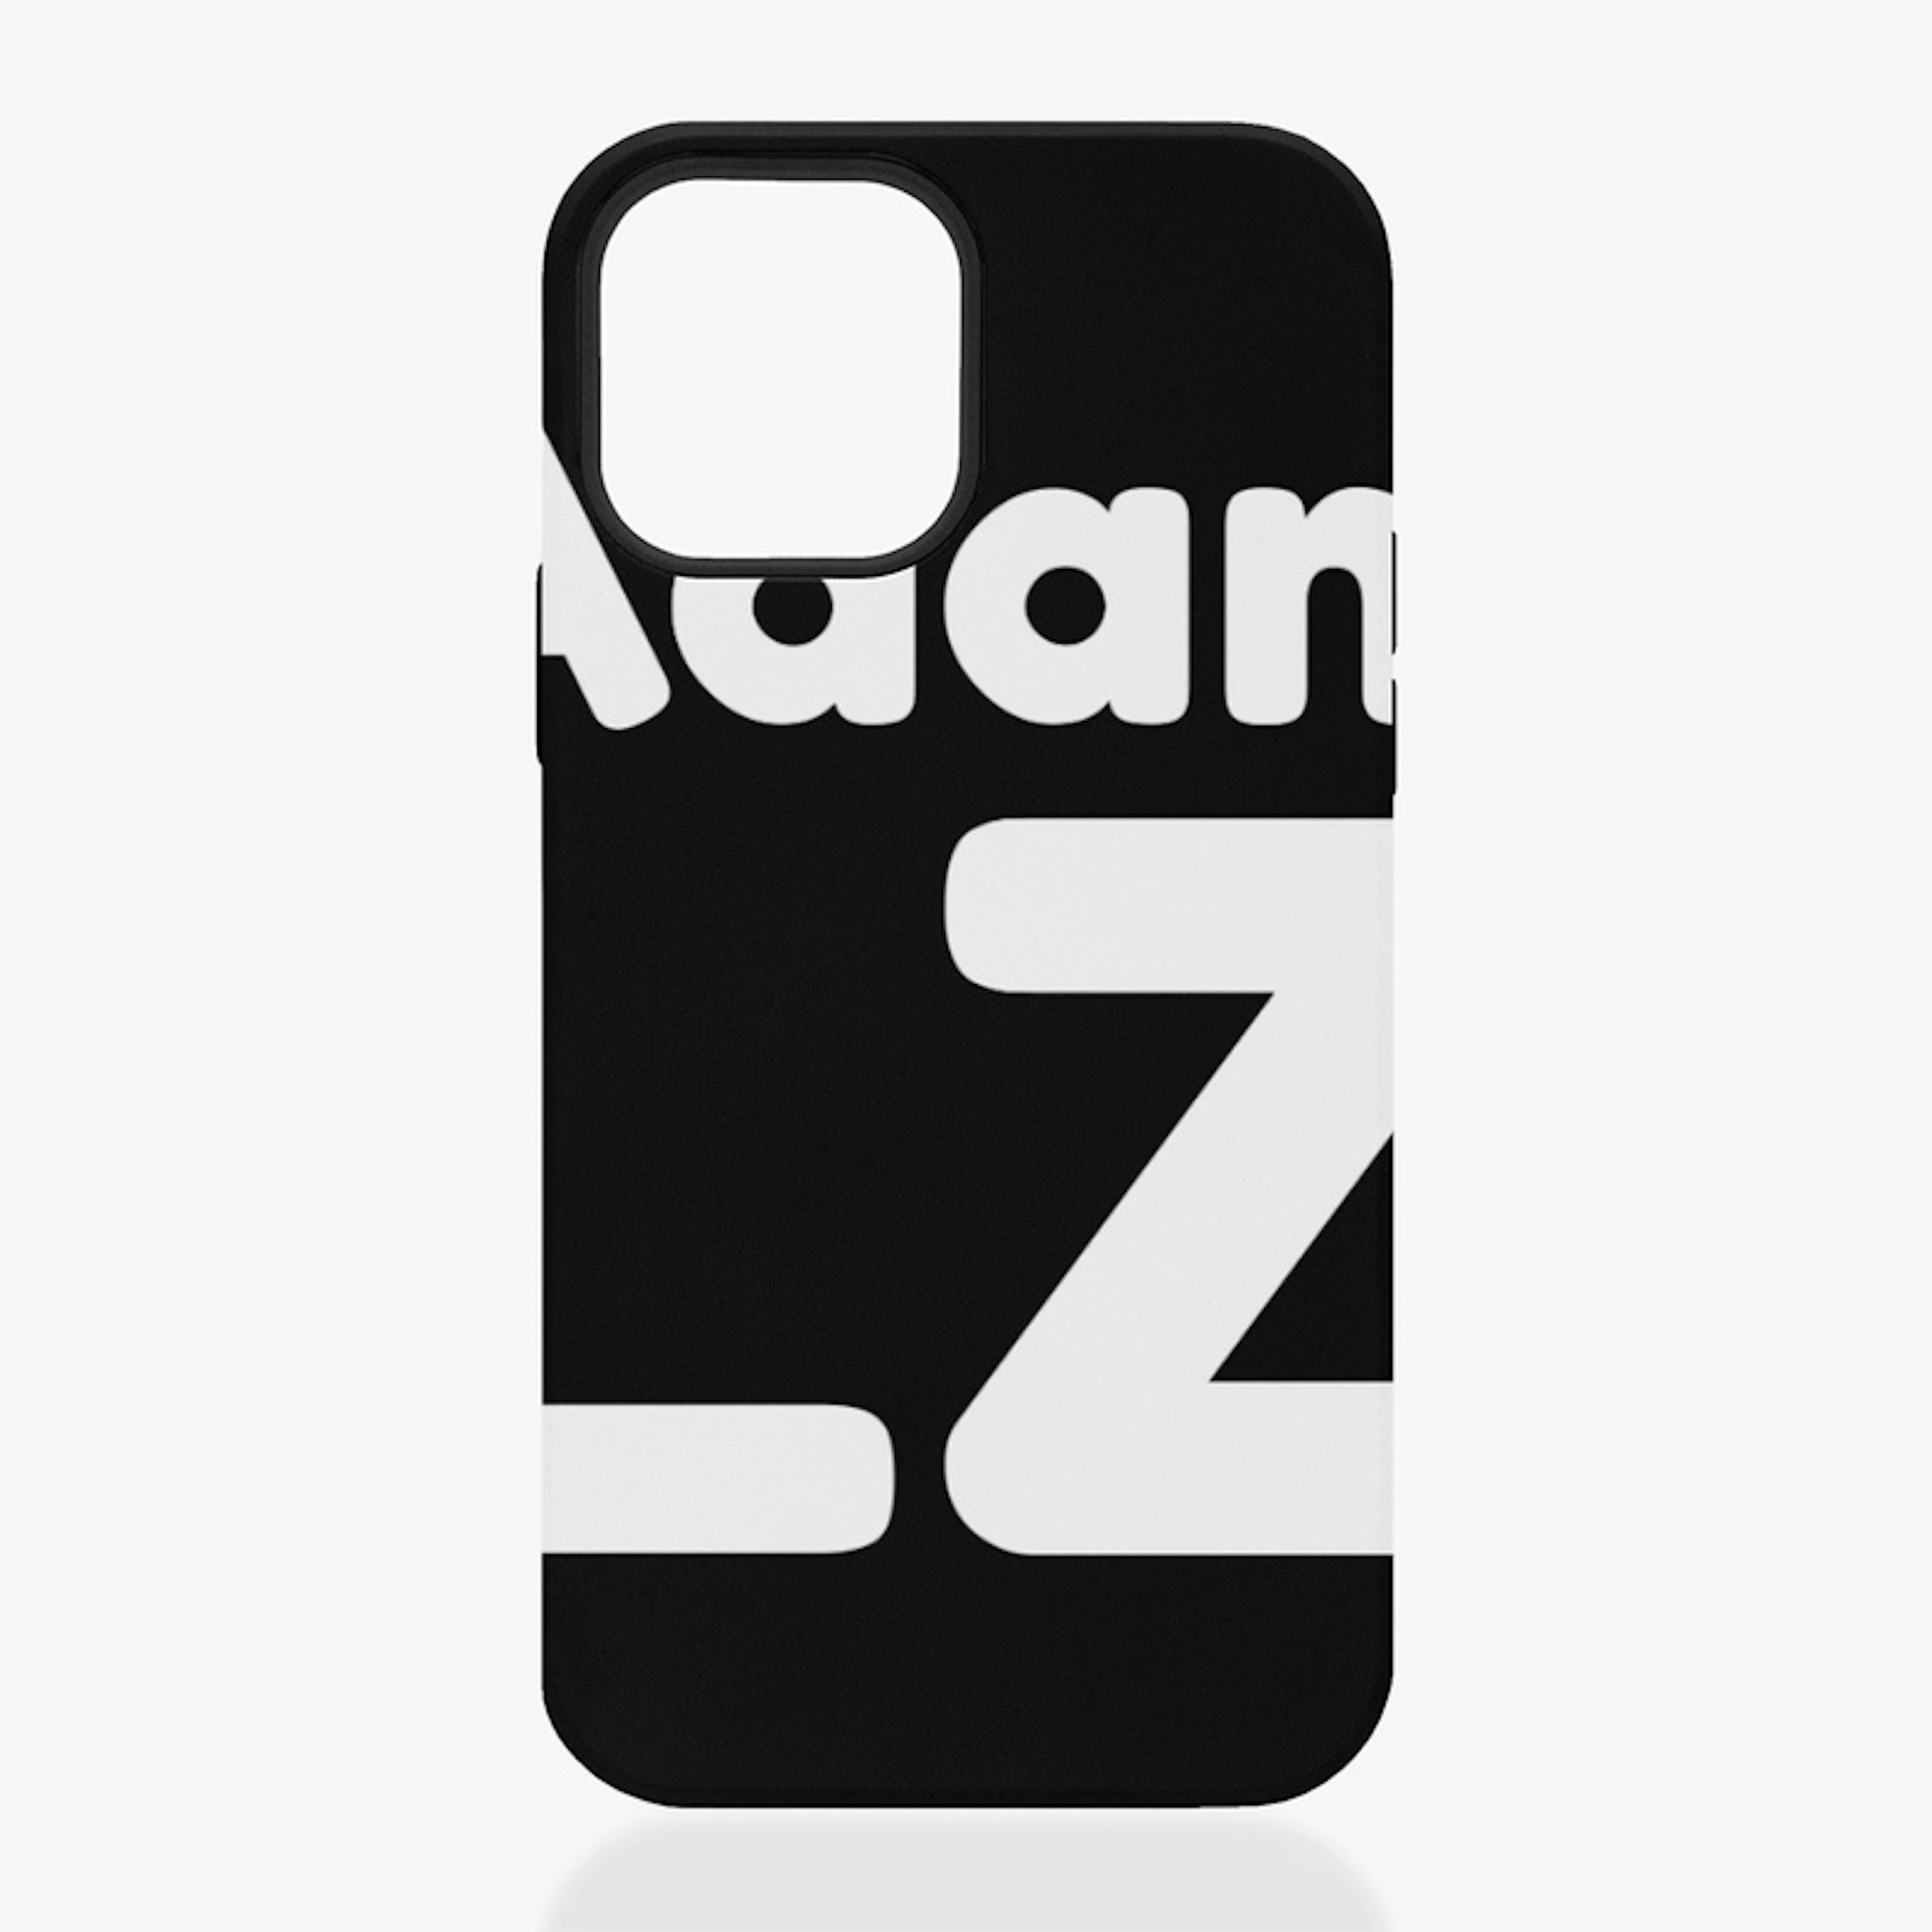 Adam LZ Merch Logo